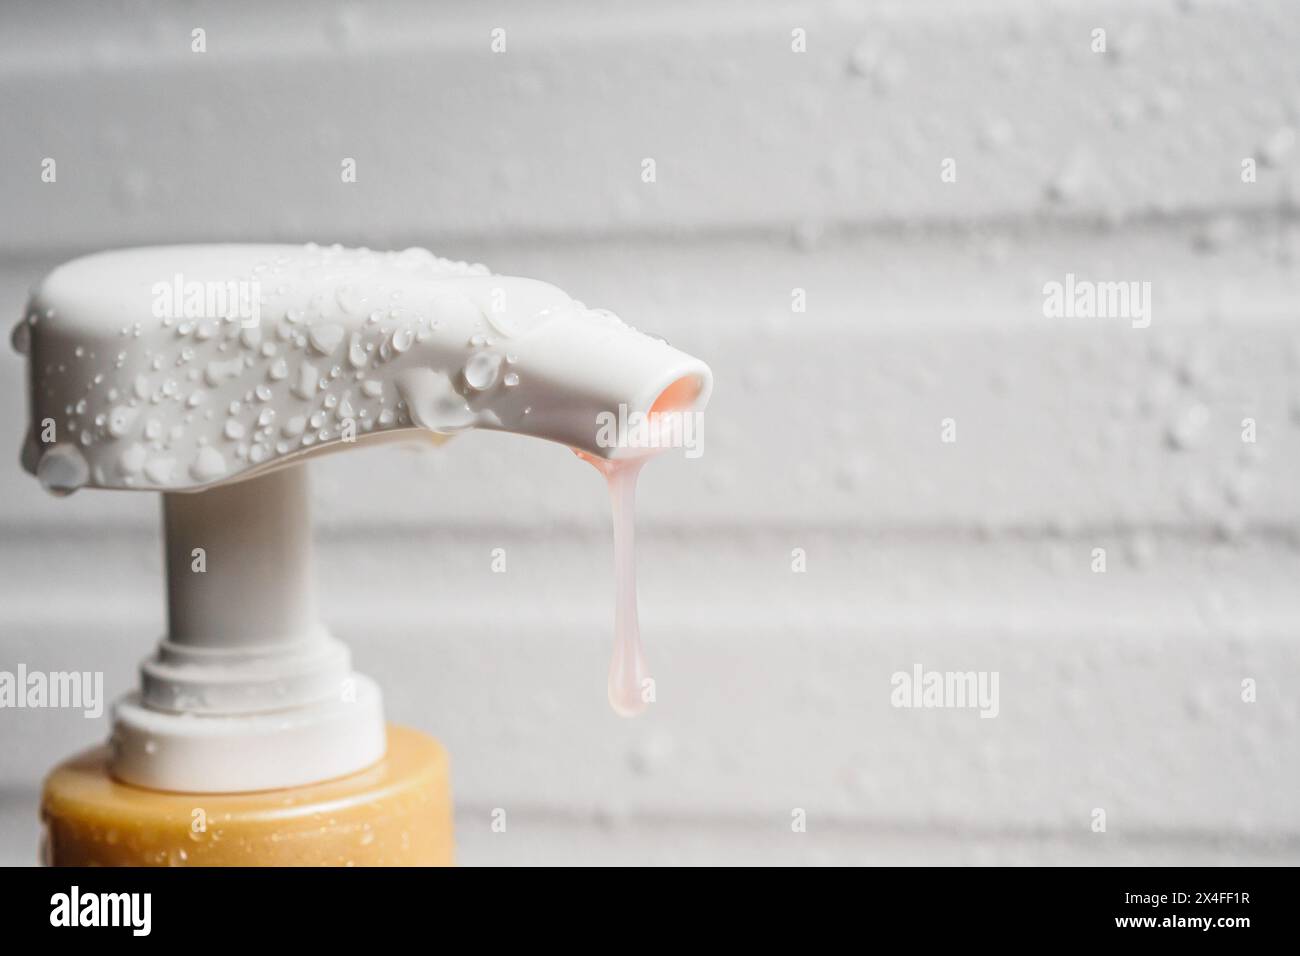 Goccia d'acqua sulla pompa erogatrice di sapone liquido durante il bagno Foto Stock